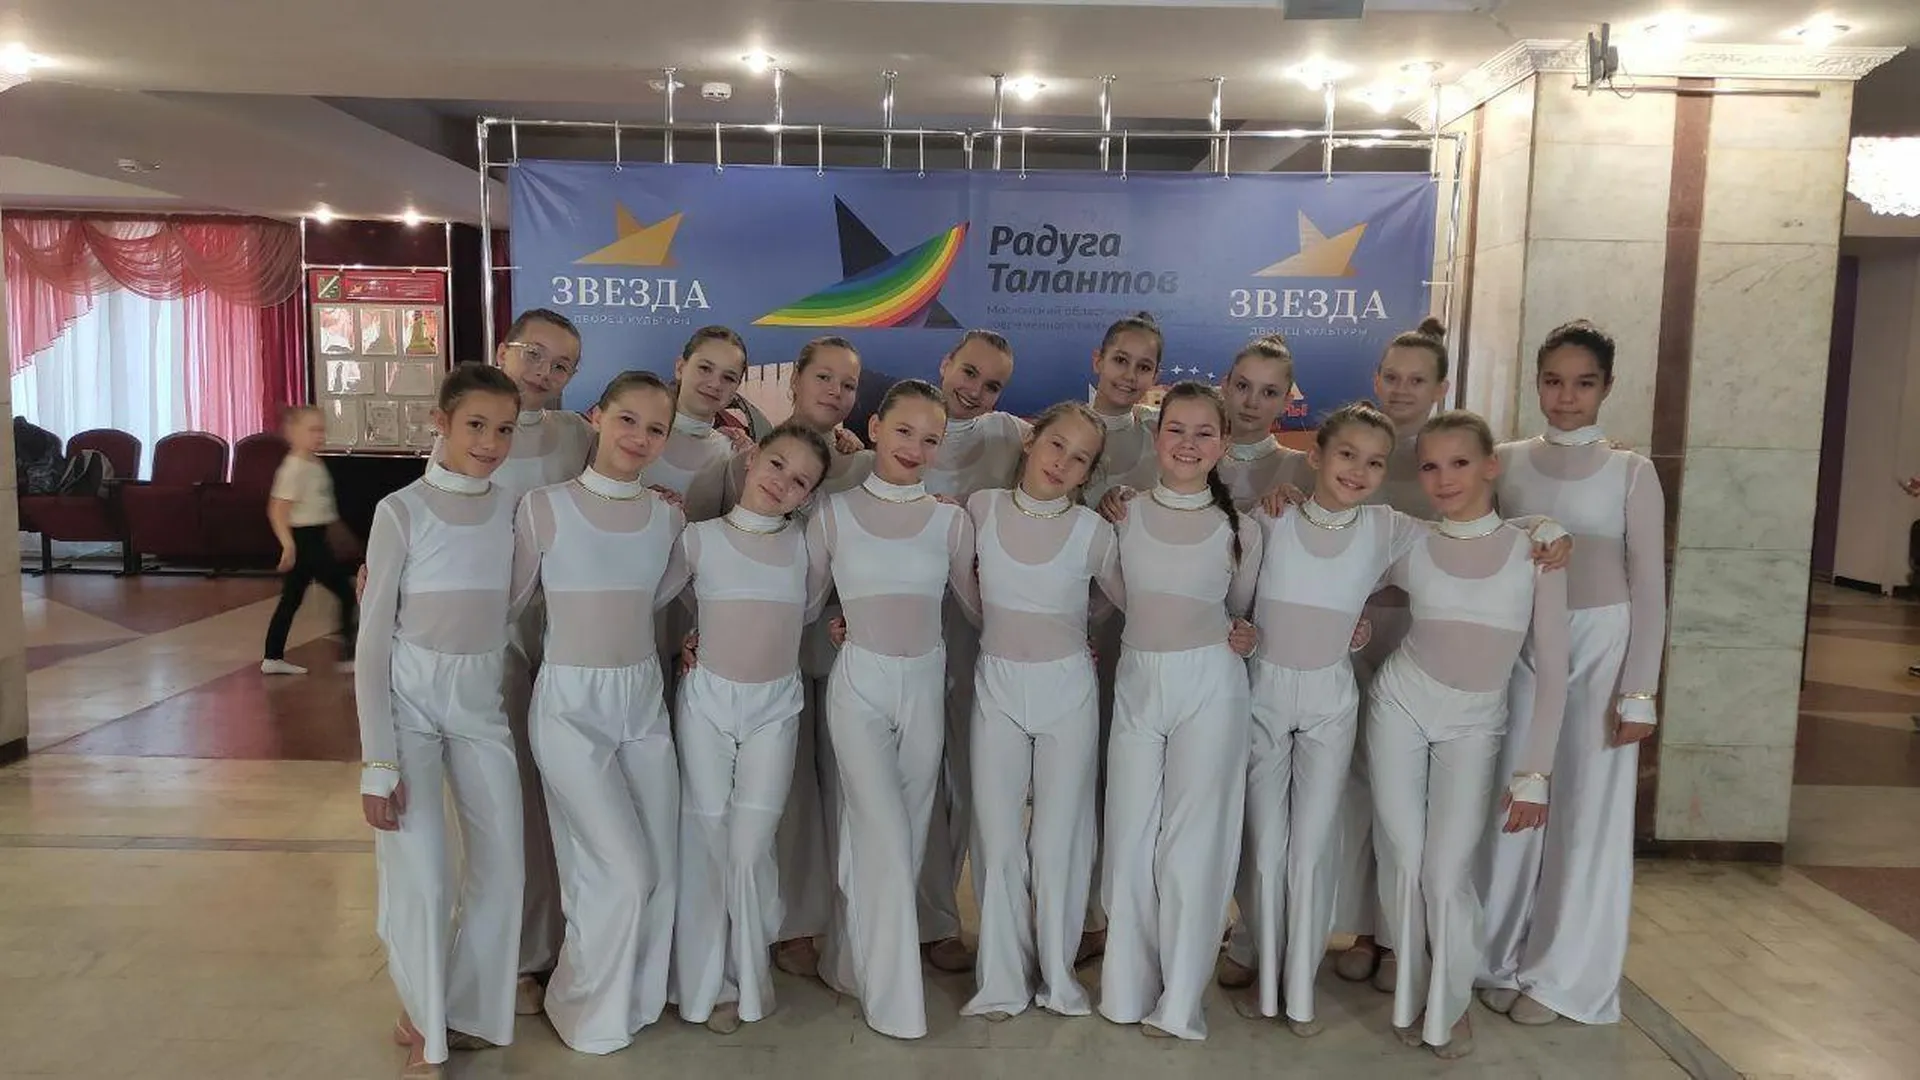 Танцевальный коллектив из подмосковного Талдома победил в региональном конкурсе